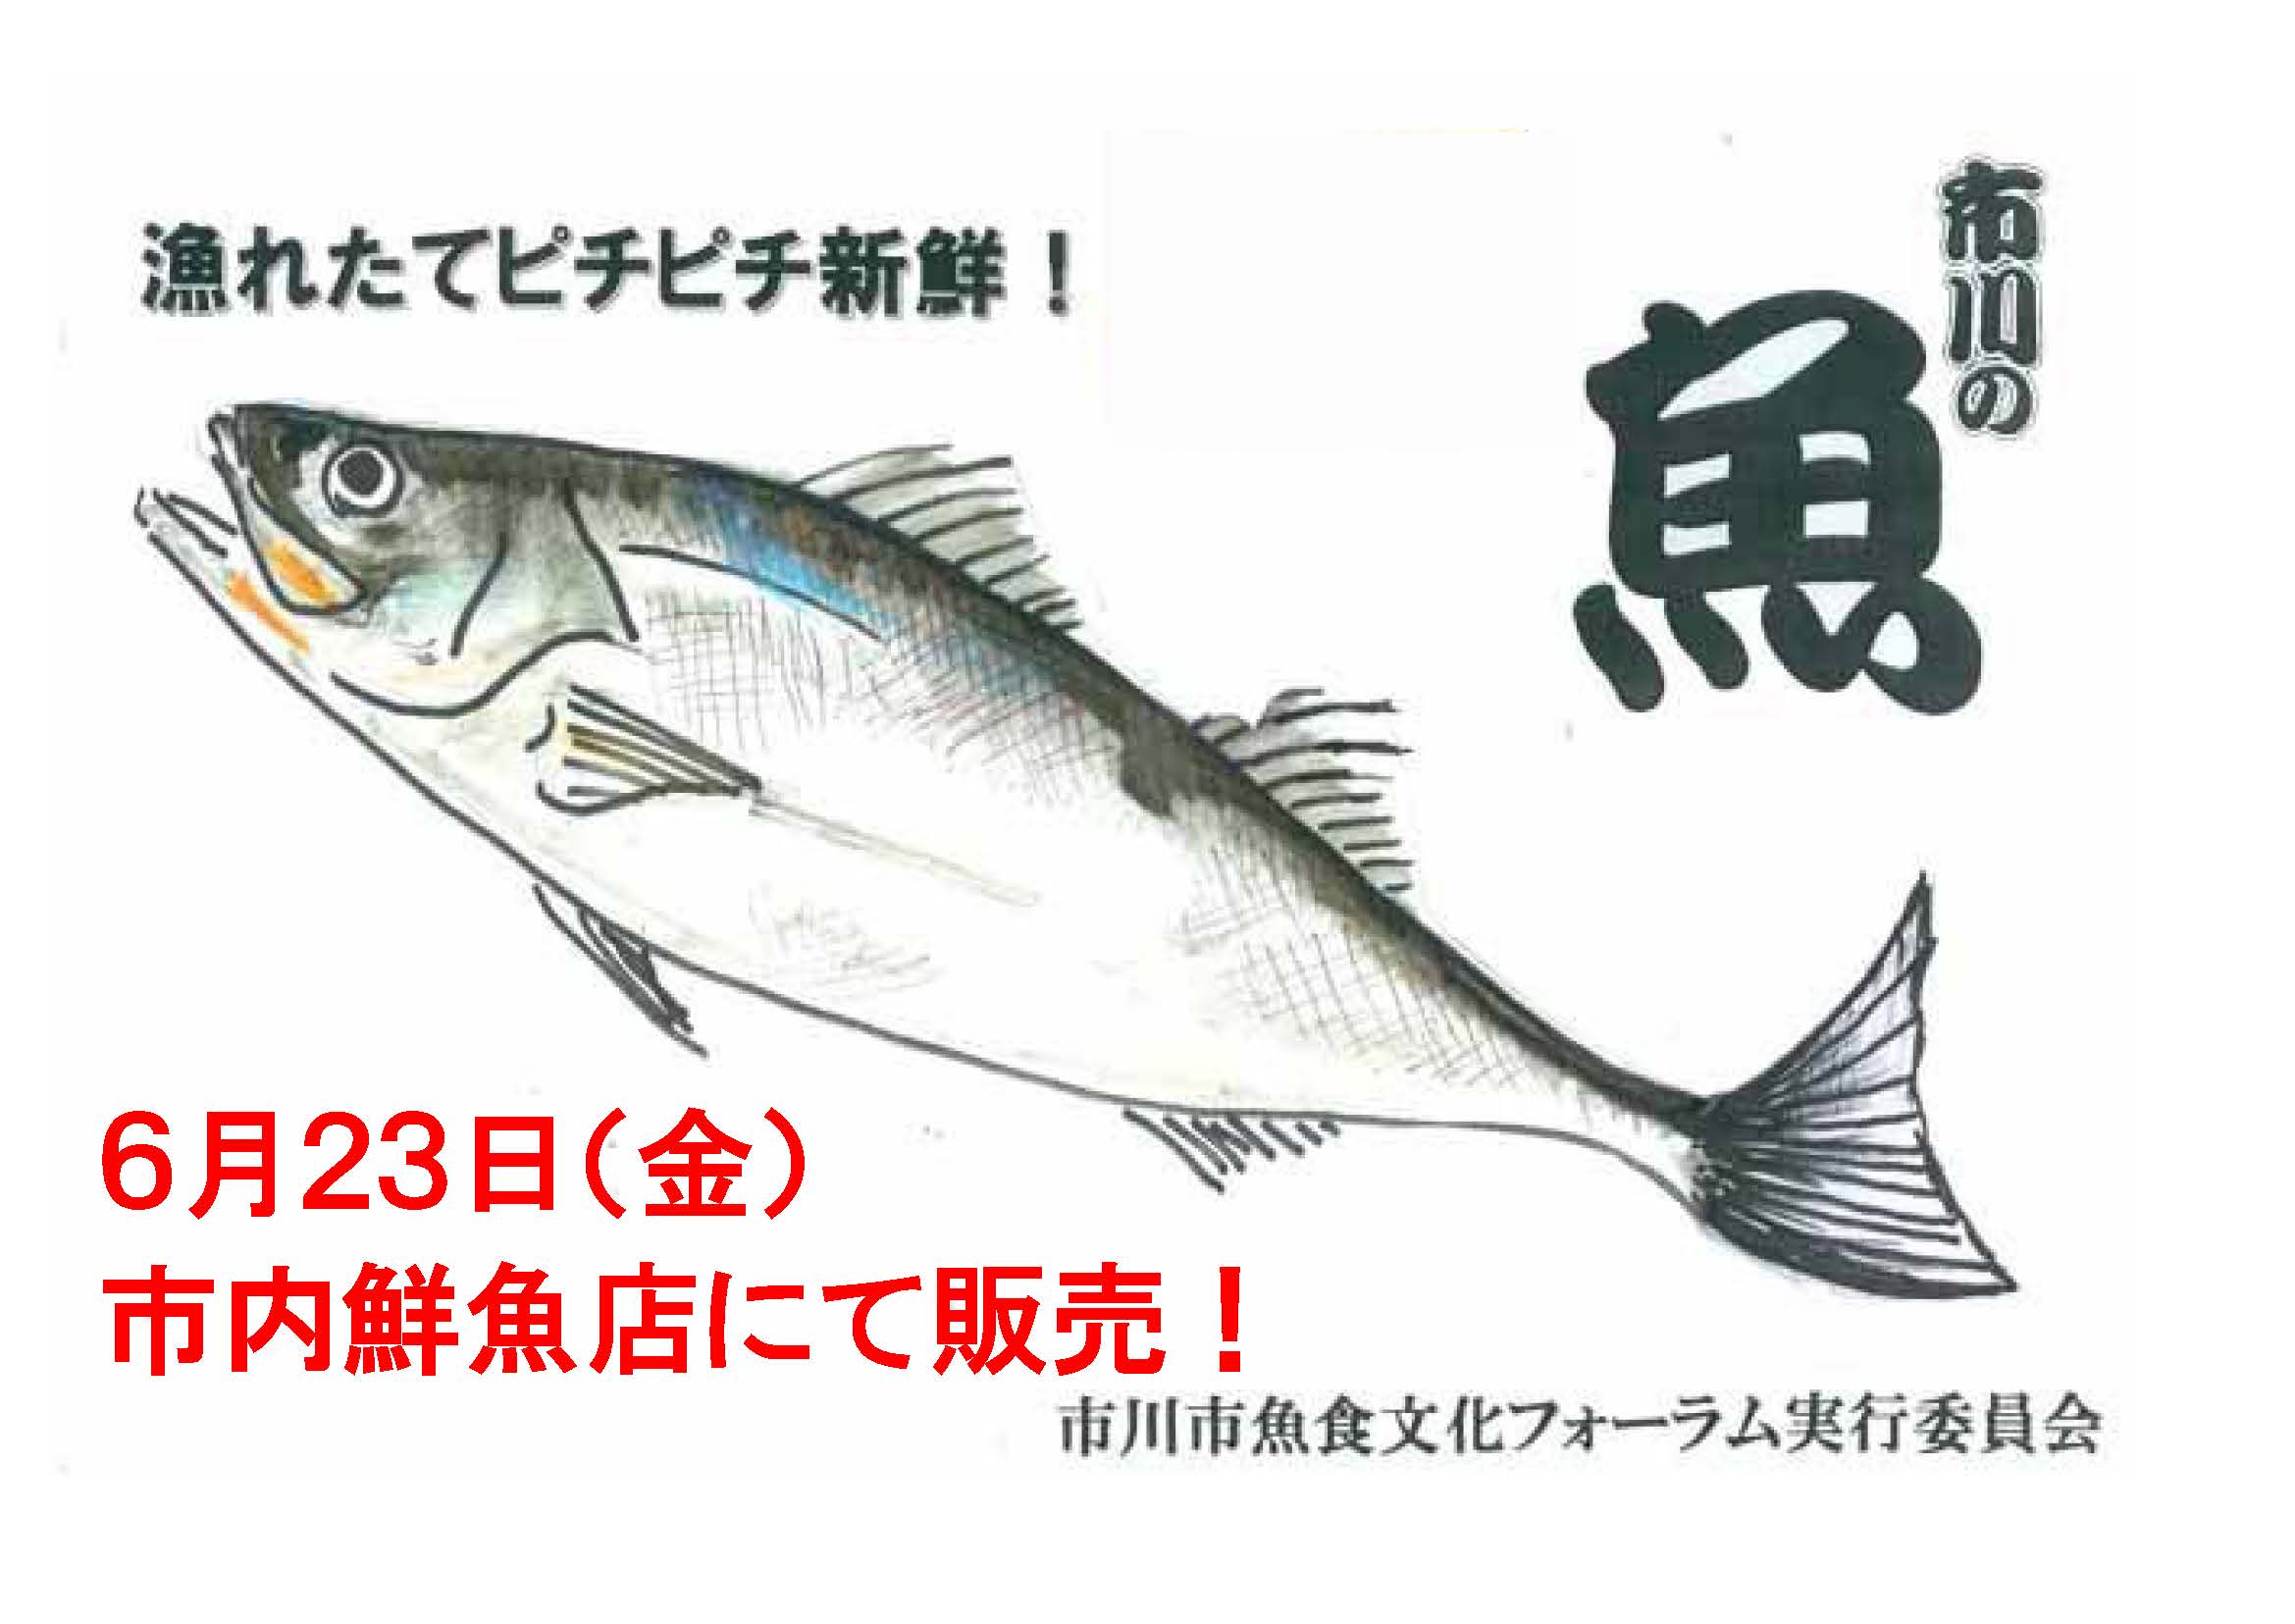 魚のイラストが描かれた画像